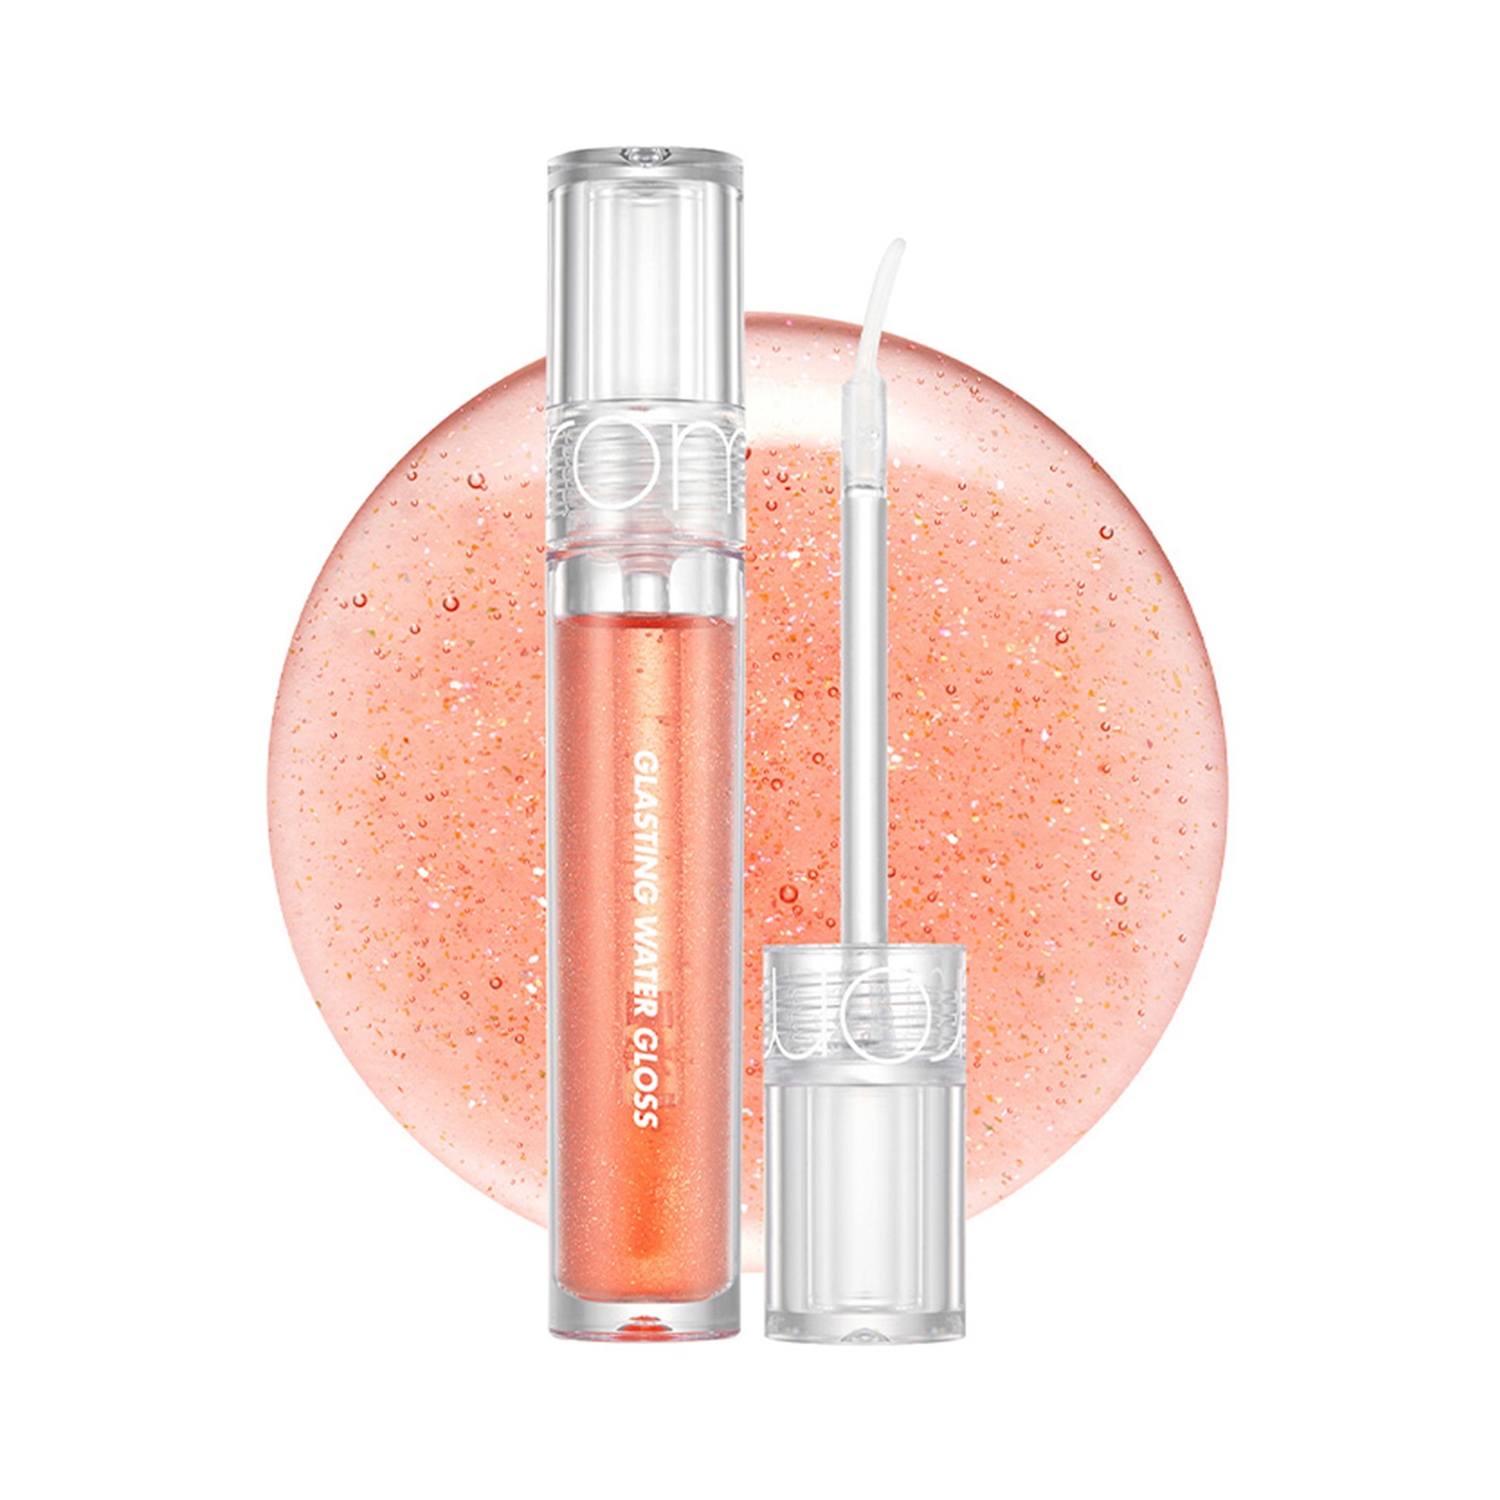 Rom&nd | Rom&nd Glasting Water Lip Gloss - 01 Sanho Crush (4g)